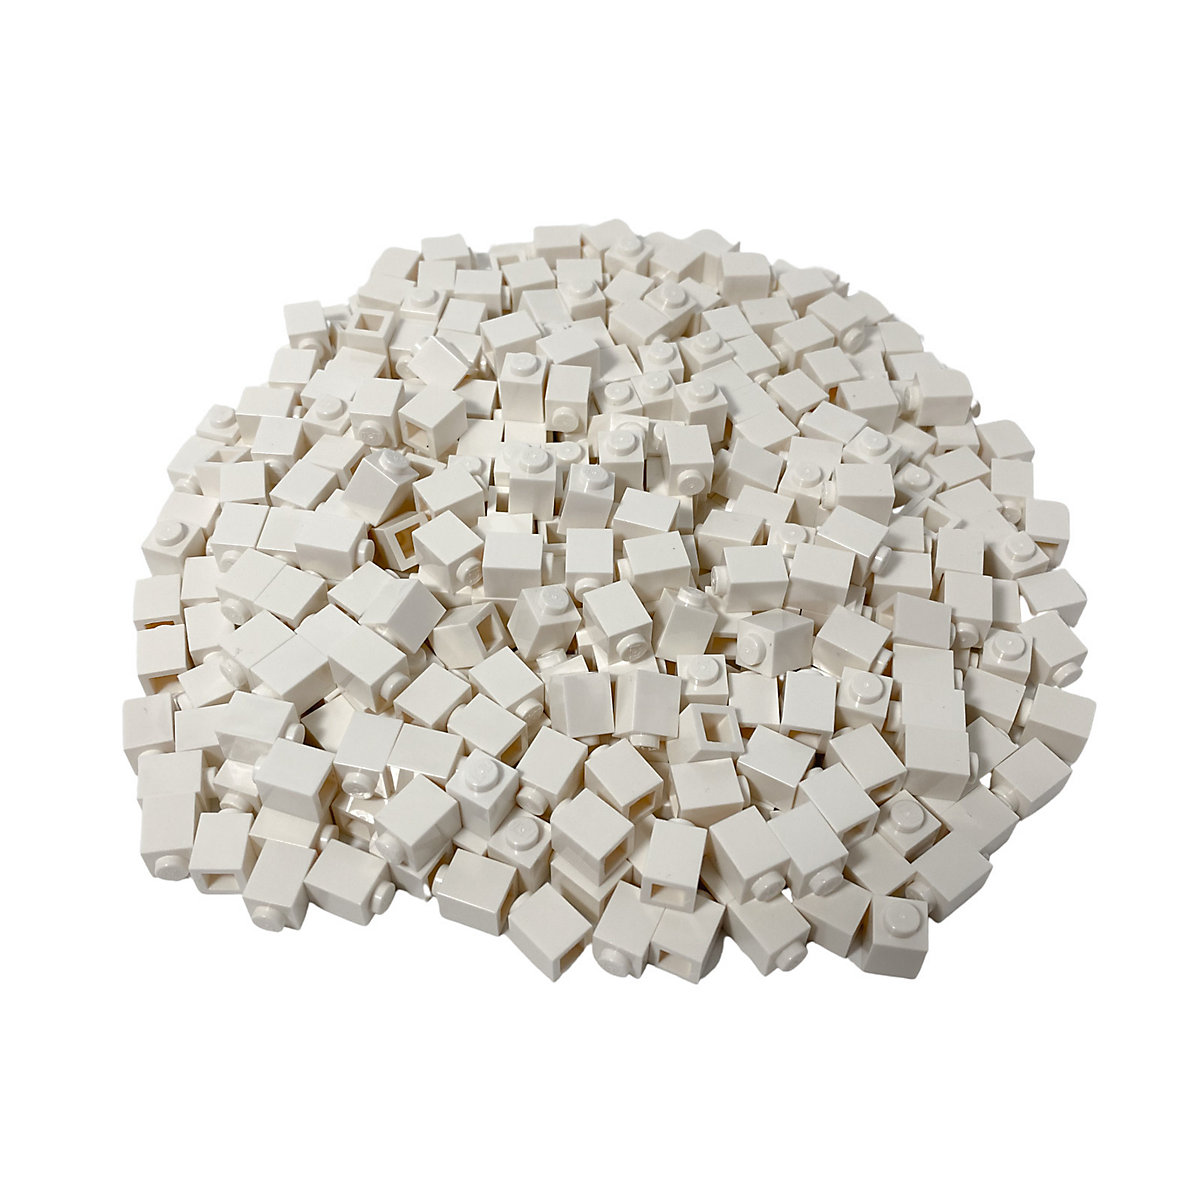 LEGO® 1x1 Steine Weiß 100 Stueck white bricks 3005